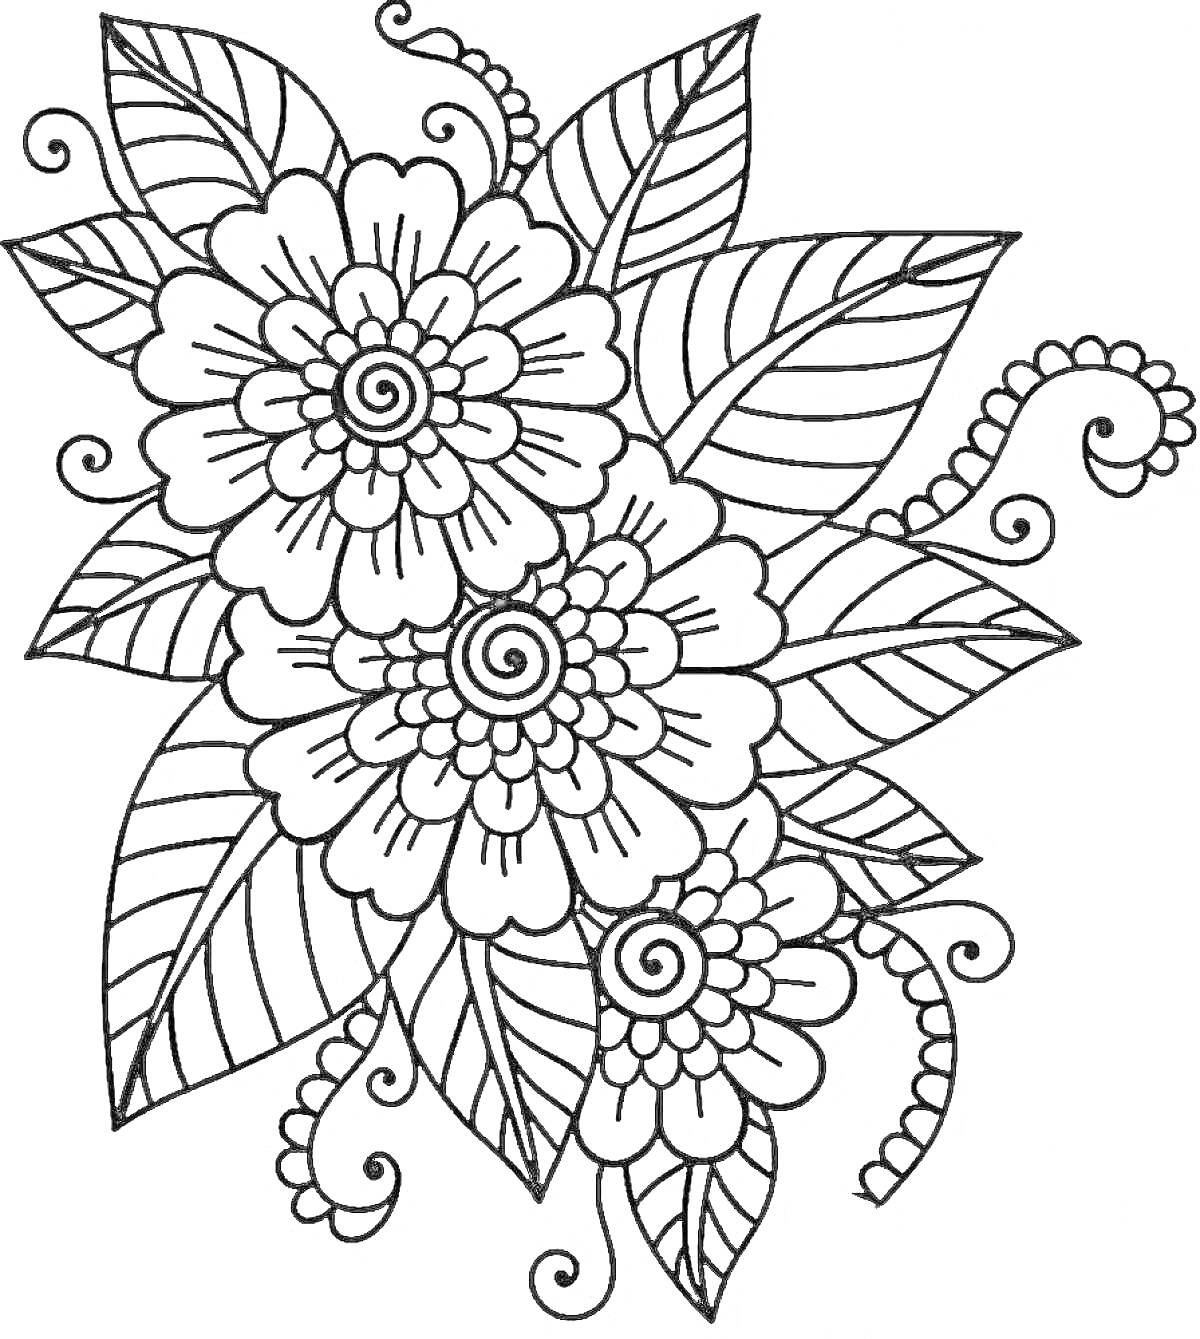 Раскраска Антистресс раскраска с цветочной композицией, включающей три цветка с деталями и узоры листьев и завитков.